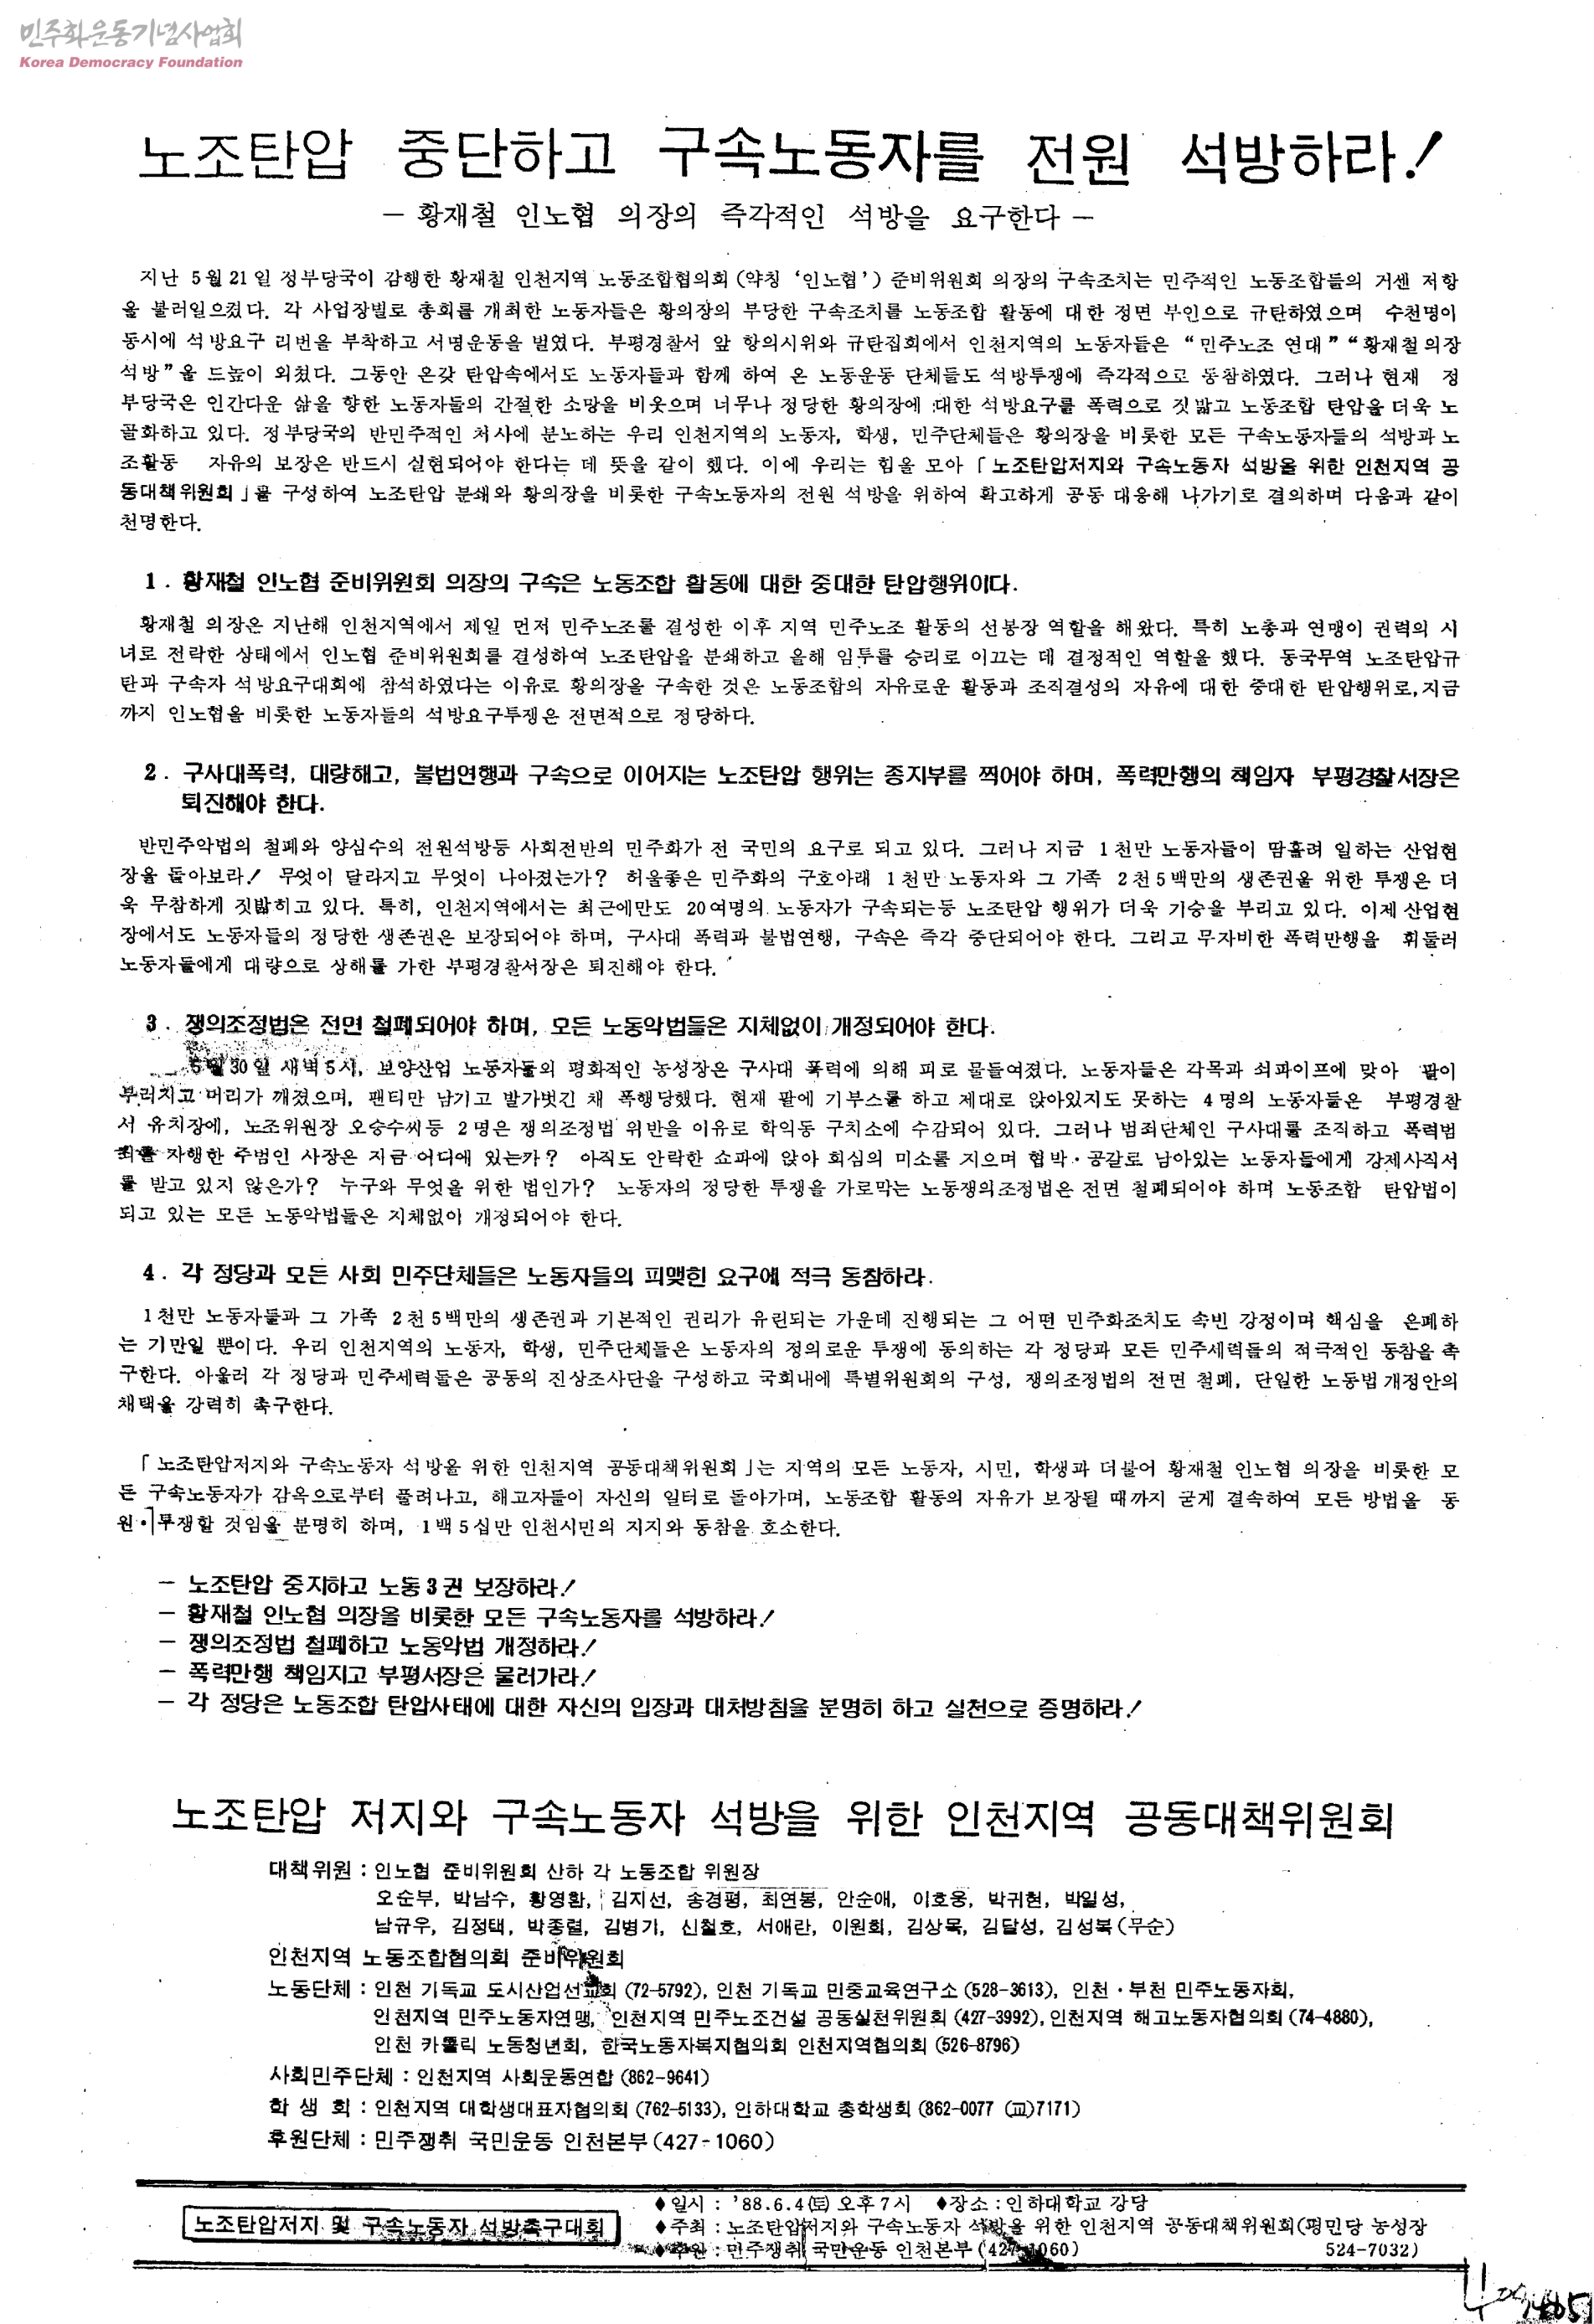 인천지역노동조합협의회(인노협) 총파업투쟁